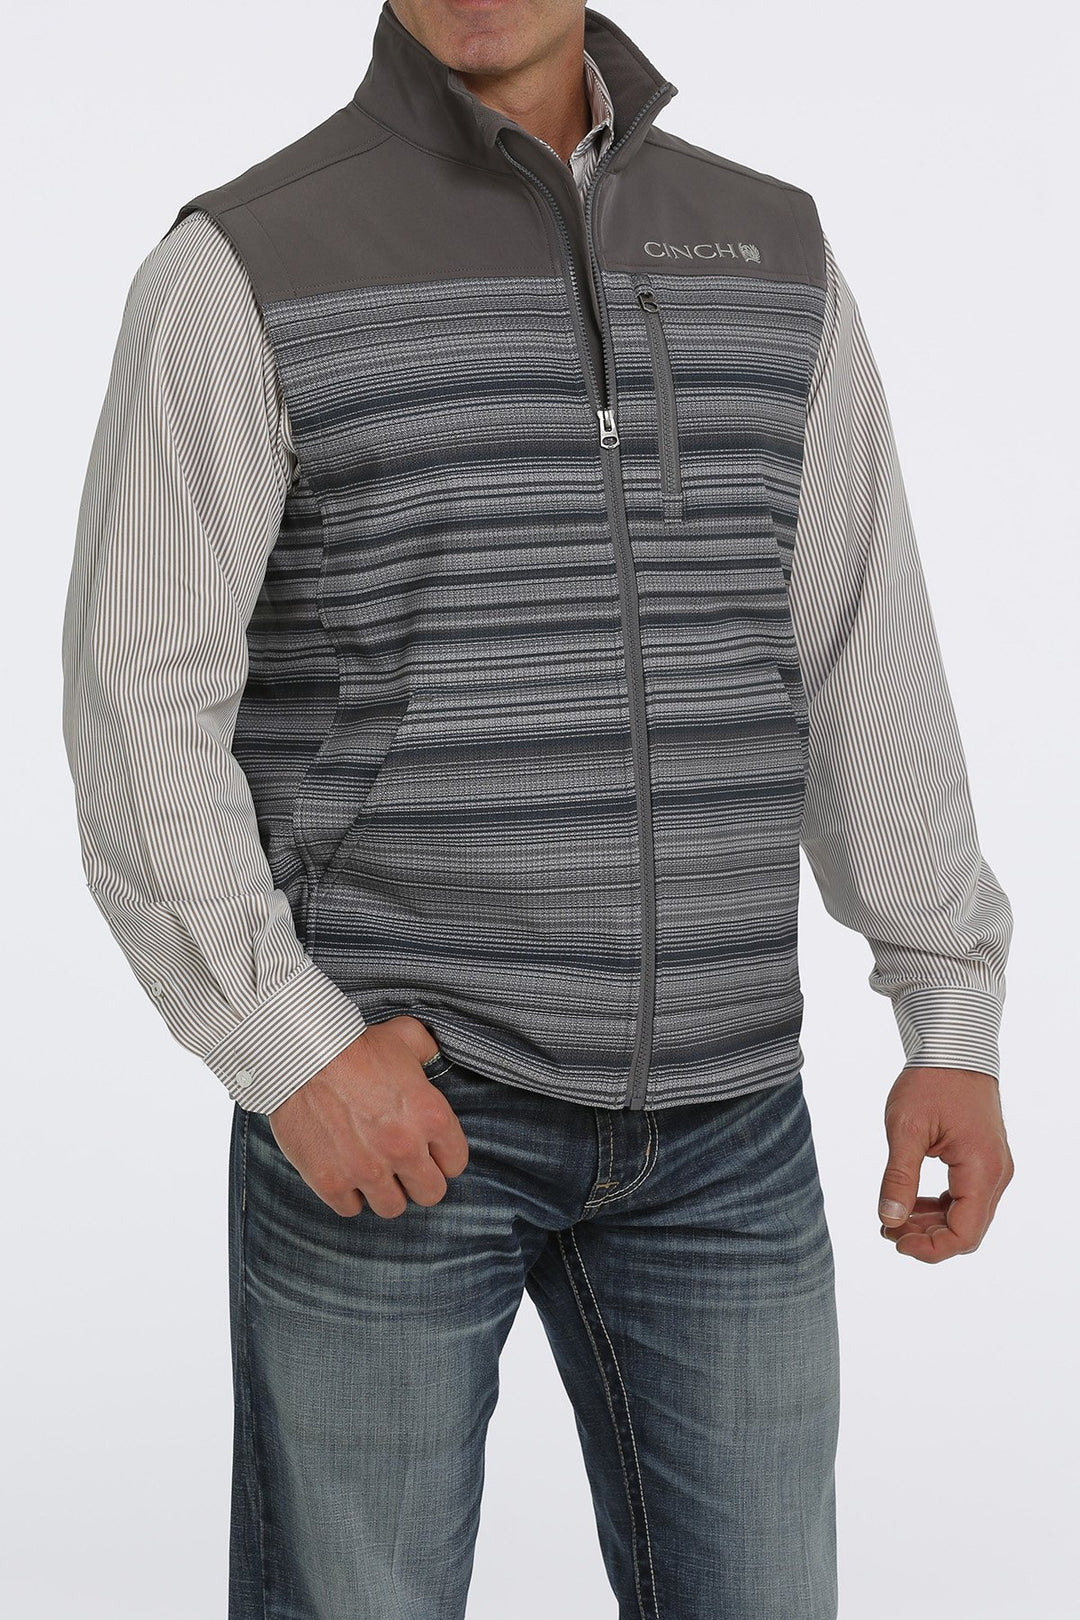 Cinch Men's Gray Bonded Vest